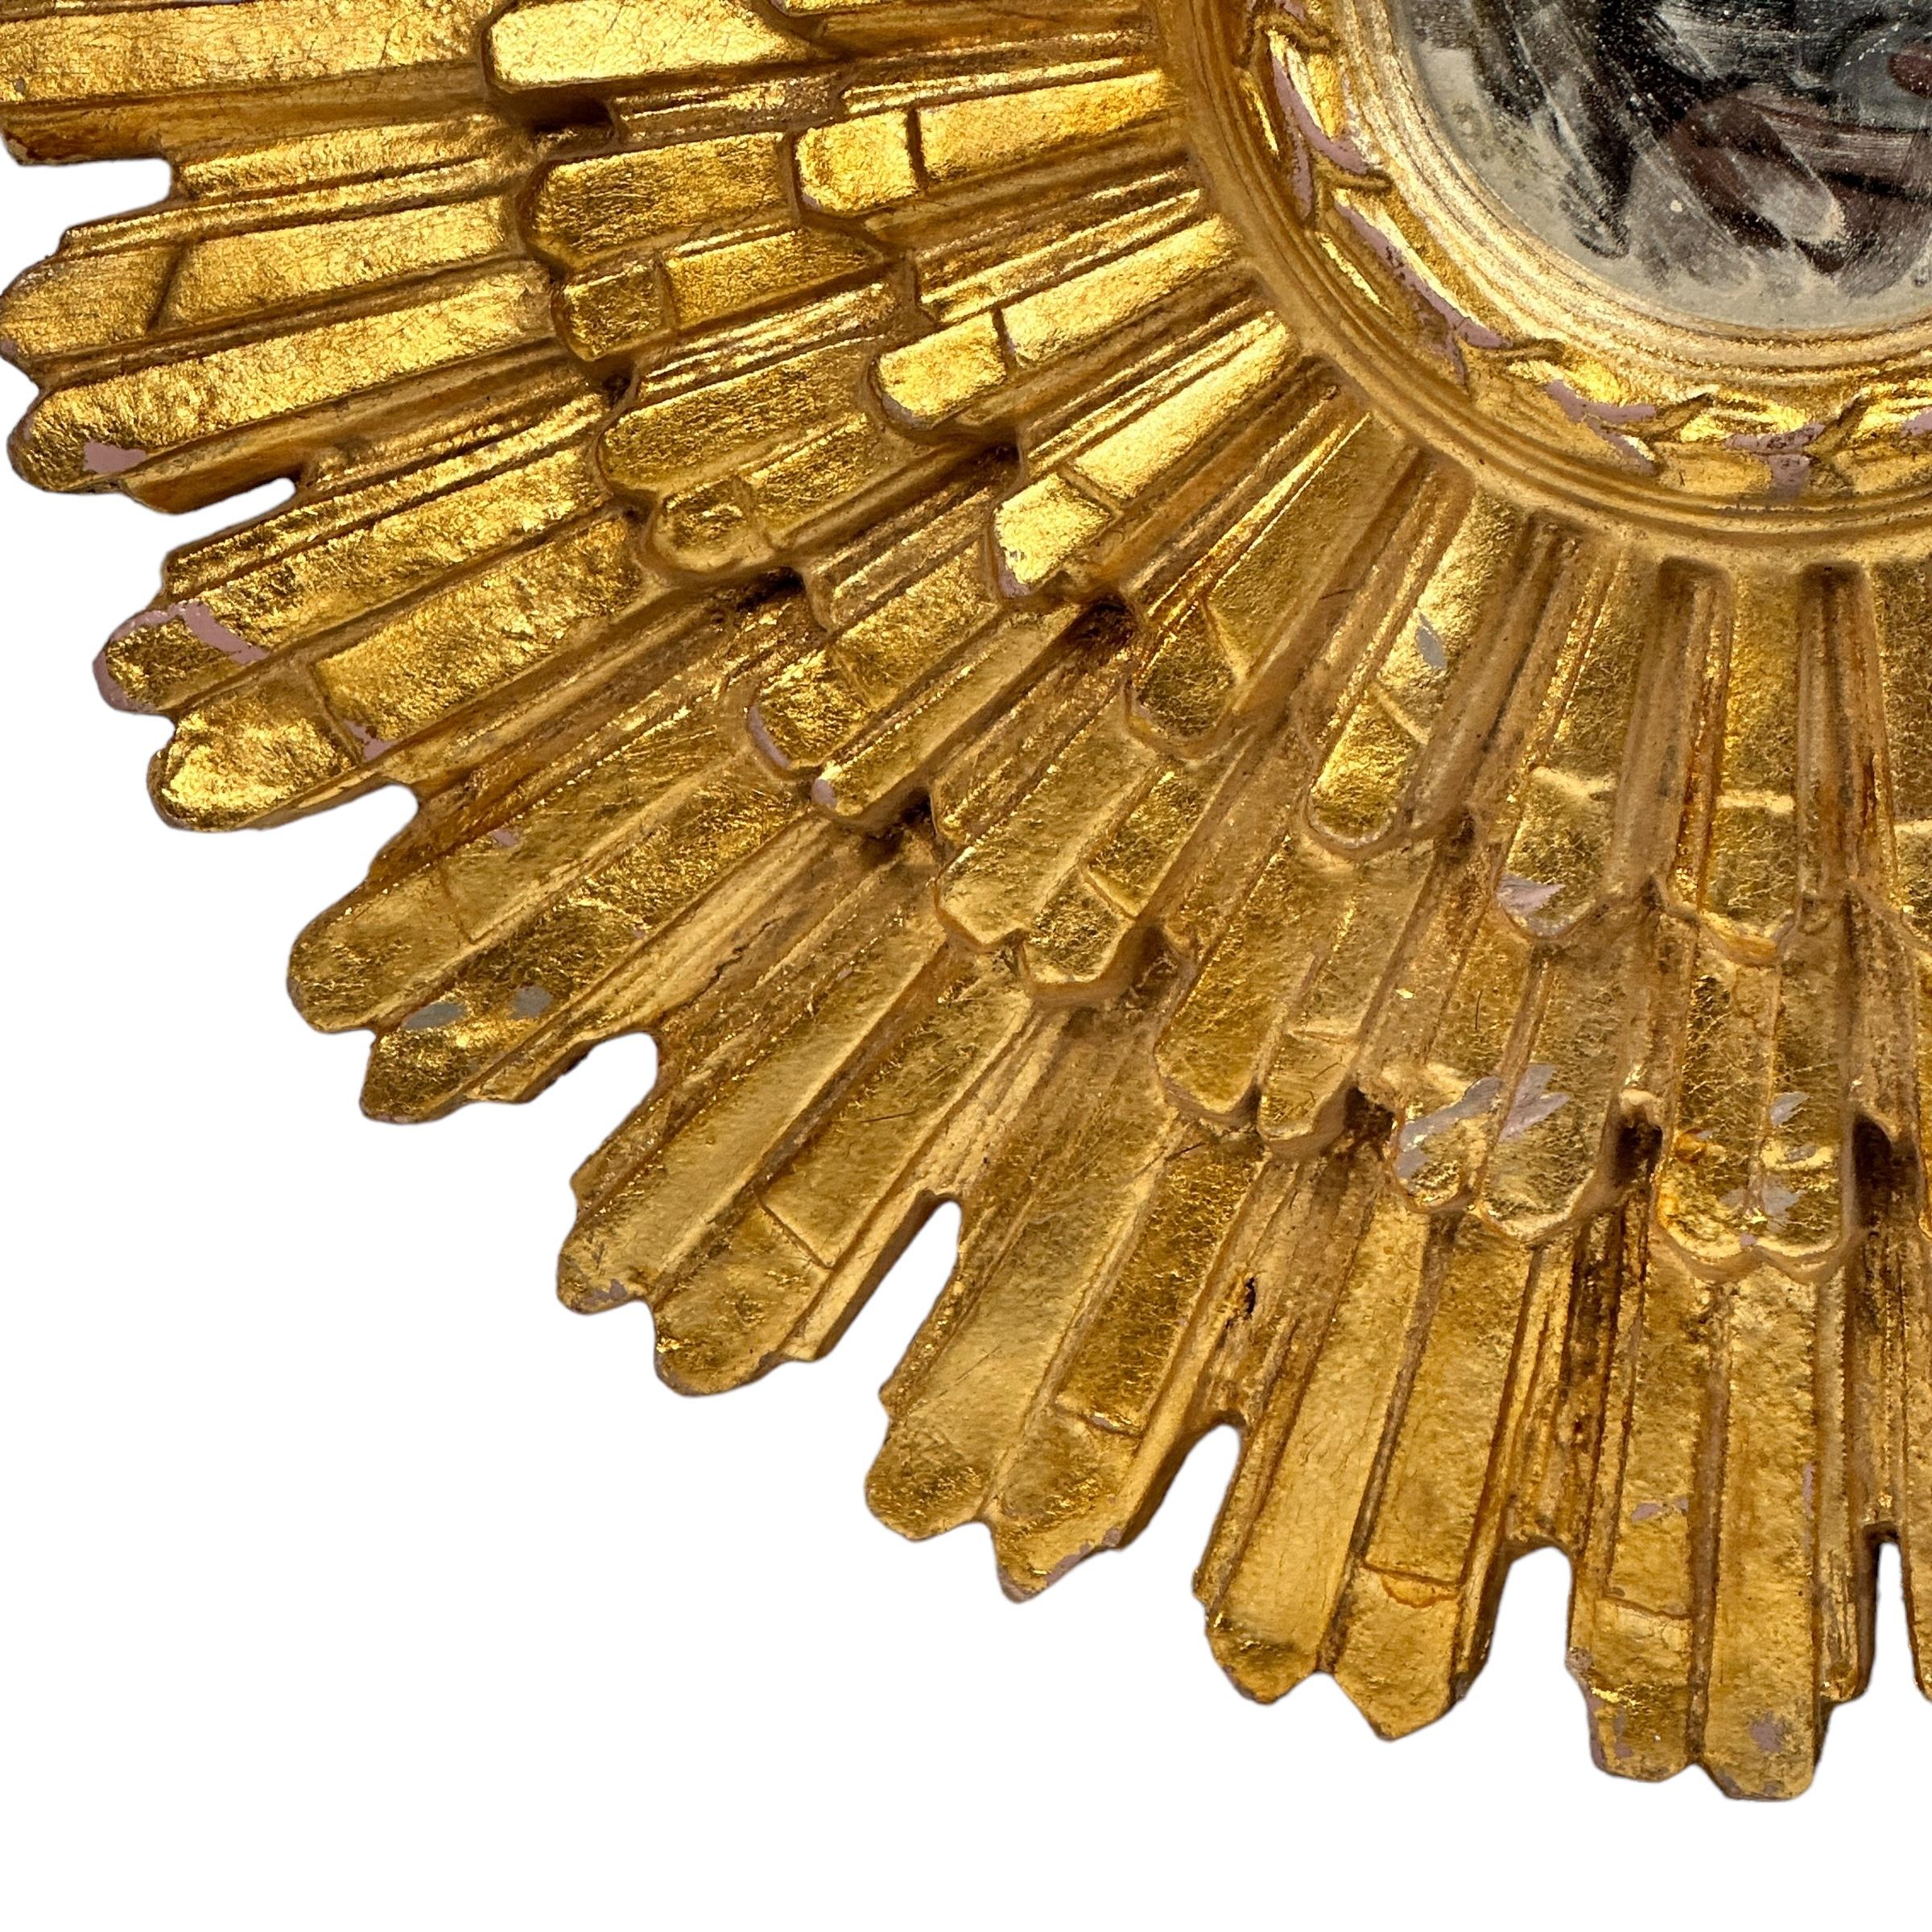 Un magnifique miroir en forme de soleil ou d'étoile. Fabriqué en bois doré. Il mesure environ 25,75 pouces de diamètre. Le miroir lui-même a un diamètre d'environ 5,13 pouces. Il se trouve à environ 3